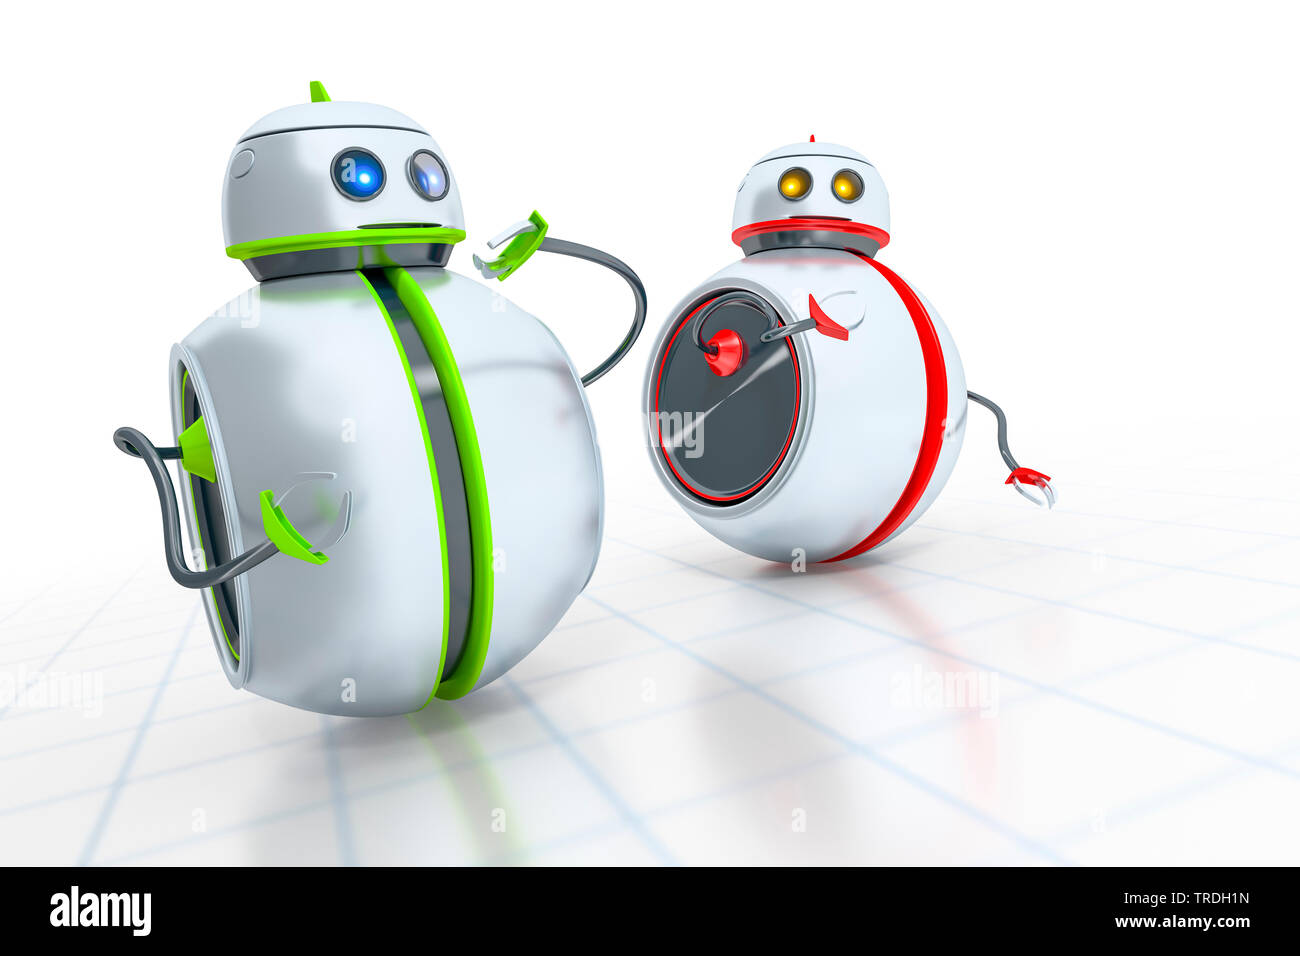 3D Computer Grafik, zwei runde niedliche Roboter in der Farbe Weiß mit grünen und roten Streifen Stockfoto